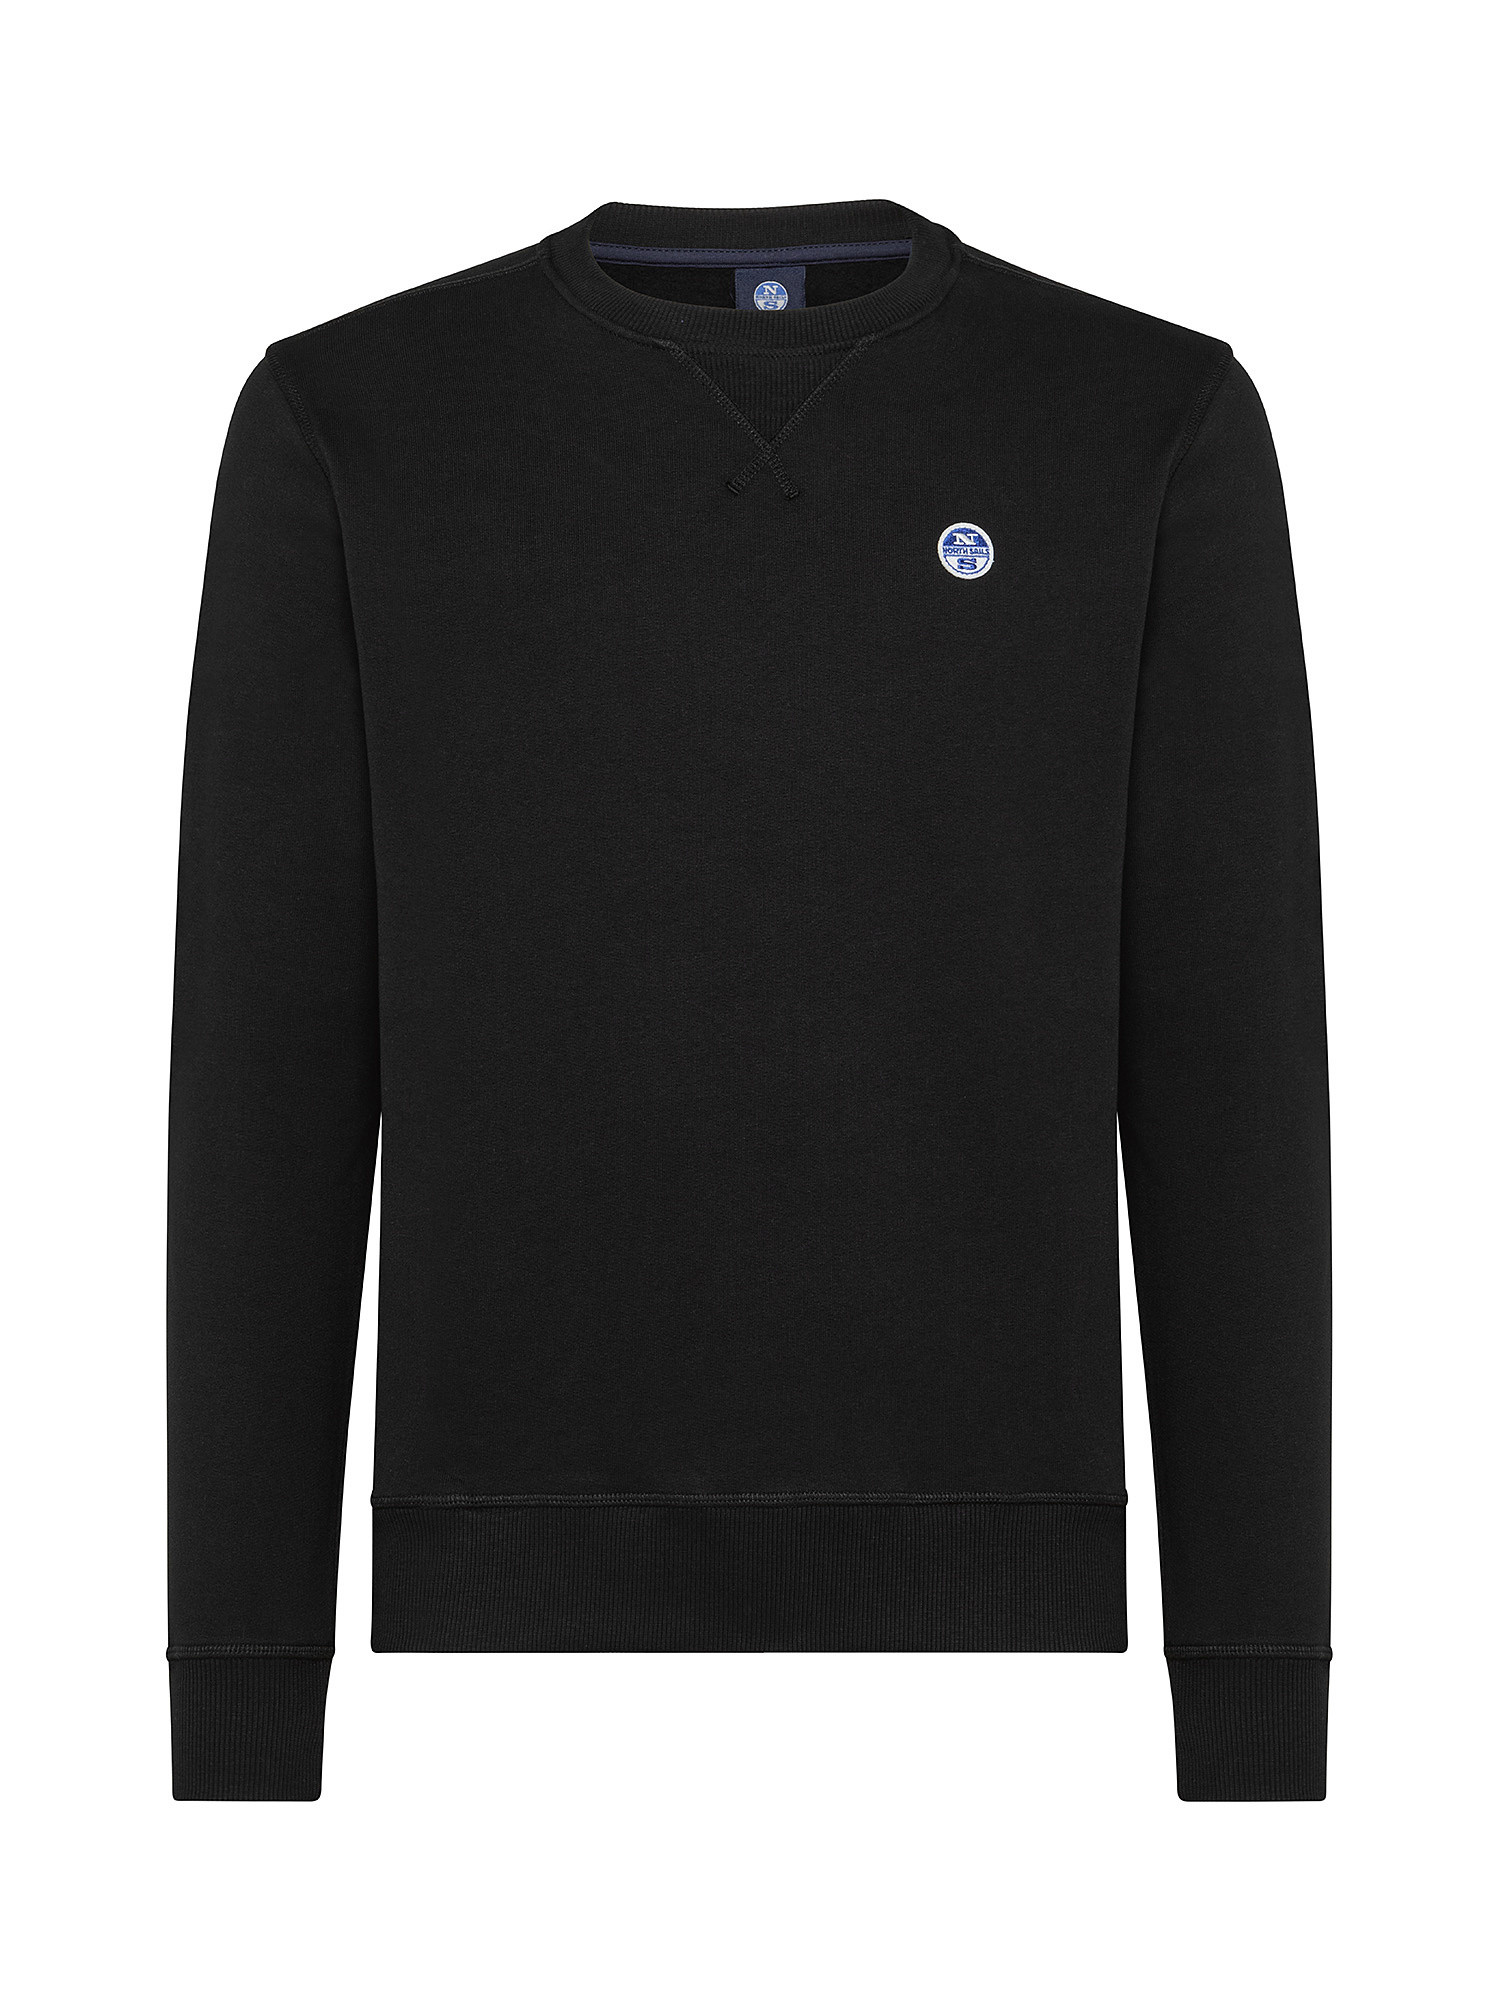 Organic cotton sweatshirt, Black, large image number 0